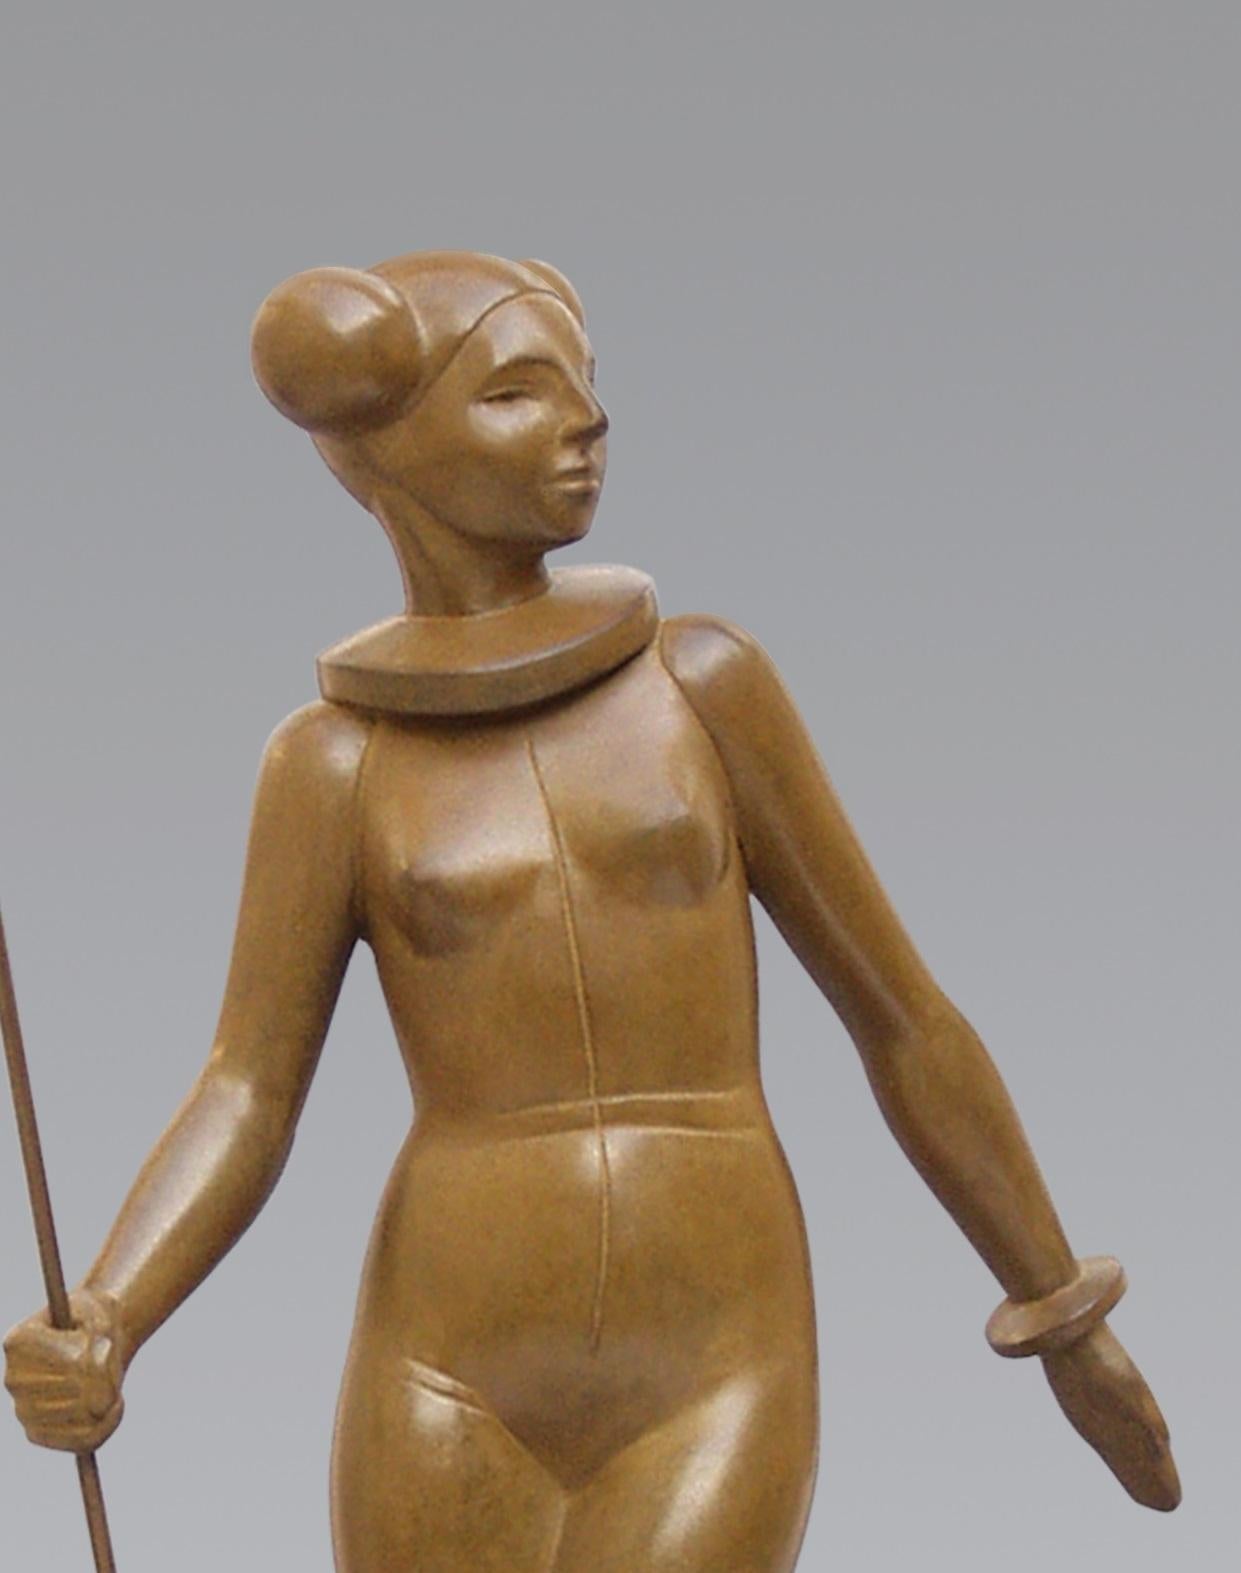 Leia Bronze-Skulptur Prinzessin Nackt Weibliche Starwars Lady Woman Zeitgenössisch (Gold), Figurative Sculpture, von Erwin Meijer